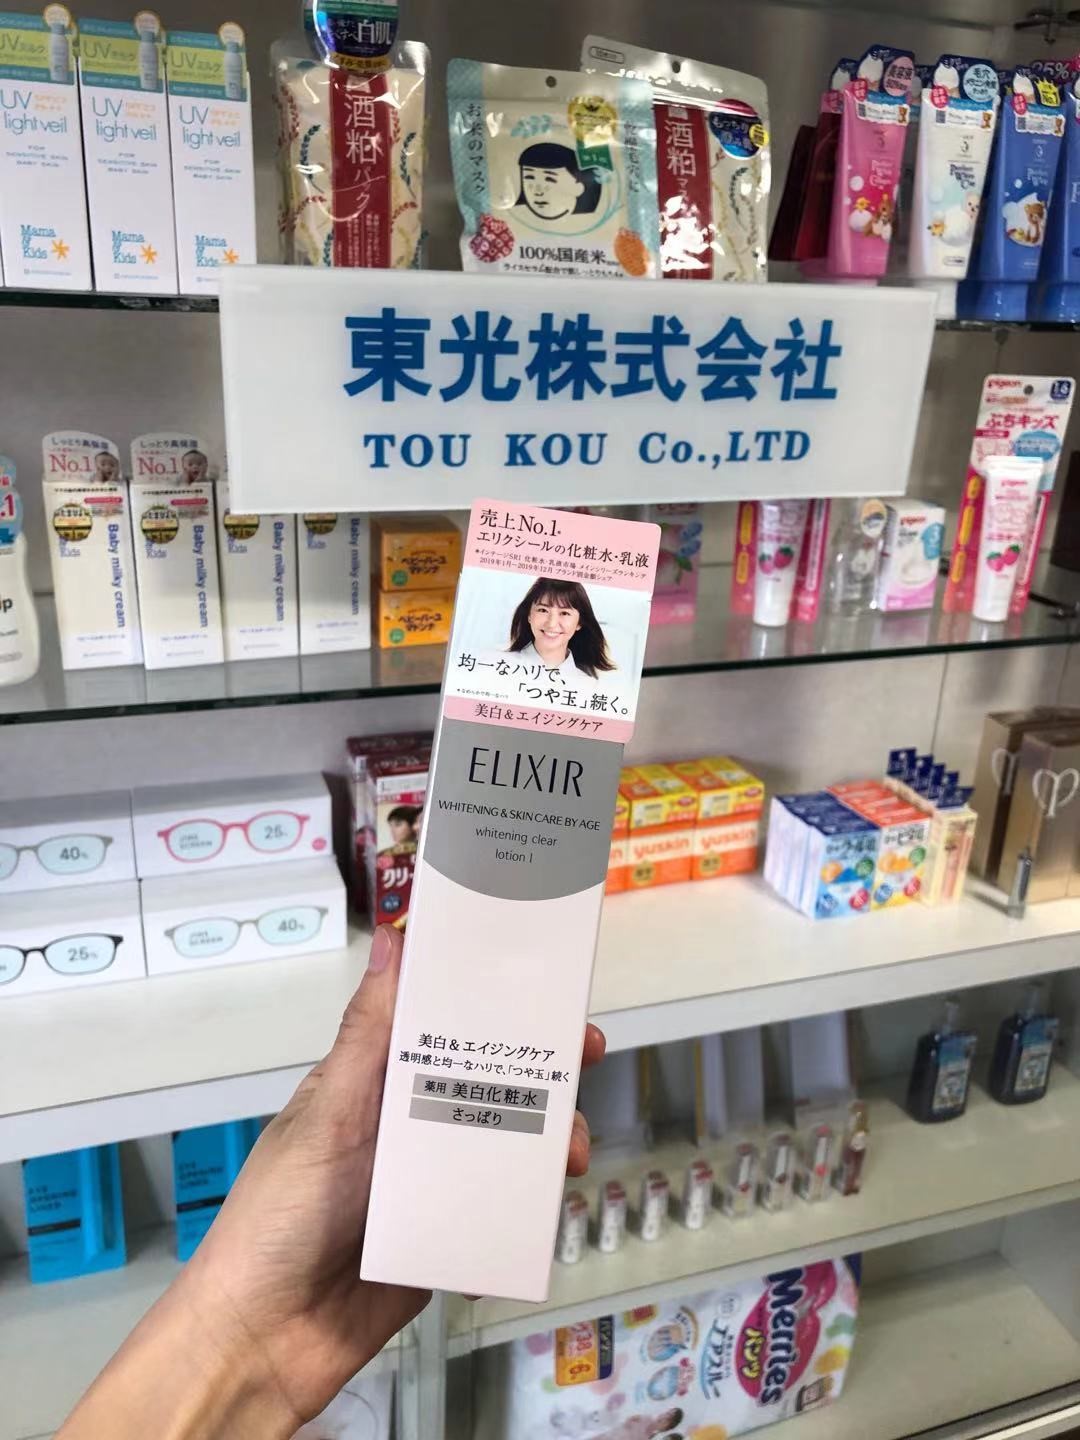 ELIXIR 美白化粧水と乳液 セット | 東光株式会社